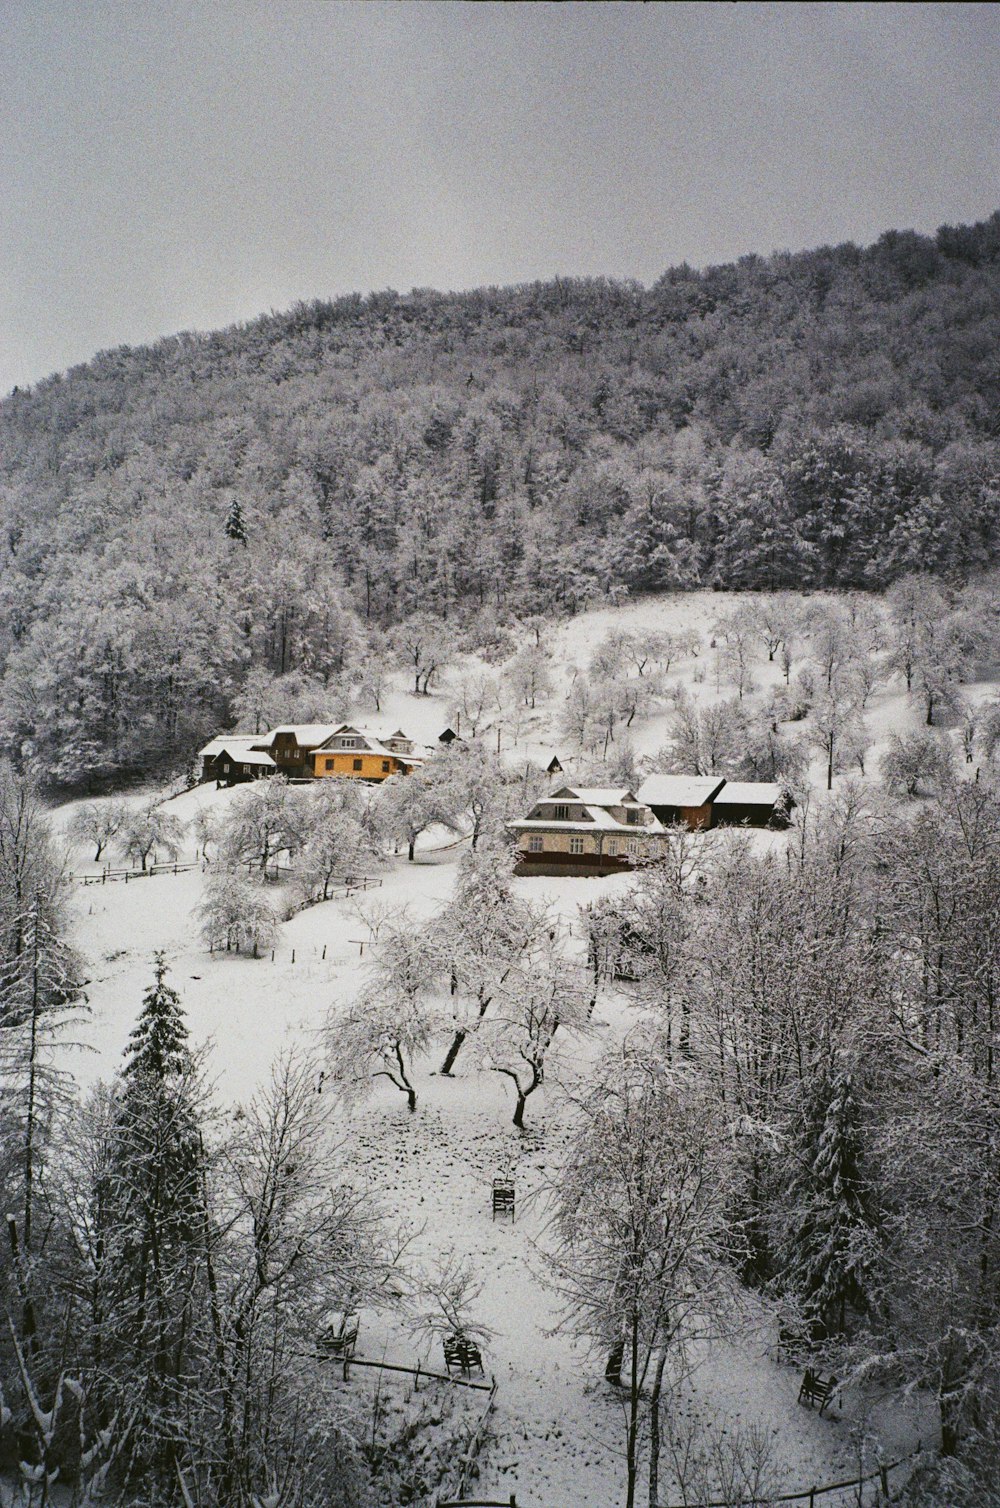 前景に家や木がある雪景色